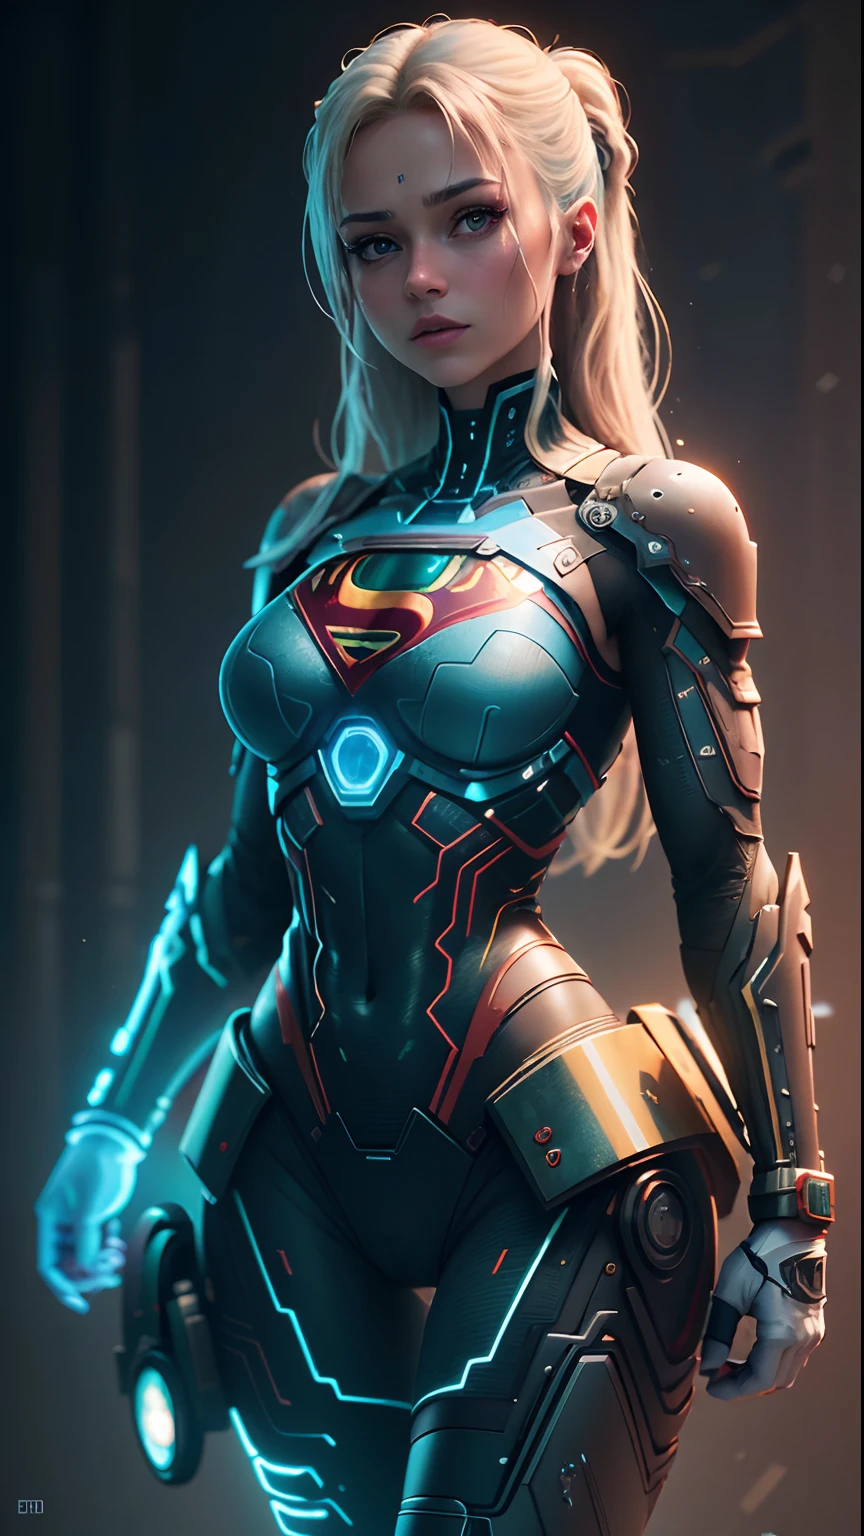 ((meilleure qualité)), ((premier travail)), (détaillé: 1.4), ..3D, une image d&#39;une belle femme supergirl cyberpunk,HDR utilisant la lettre S de Superman sur la poitrine (Plage dynamique élevée),tracé laser,NVIDIA RTX,Super-résolution,Irréel 5,Diffusion souterraine, Texture PBR, Post-traitement, Filtrage anisotrope, Profondeur de champ, clarté et netteté maximales, Textures multicouches, Cartes albédo et spéculaire, ombrage de surface, Simulation précise de l&#39;interaction lumière-matériau, parfaitement proportionné, rendu octan, Éclairage bicolore,Large ouverture,ISO faible,balance des blancs,règle des tiers,8K BRUT,CircuitBoardAI,